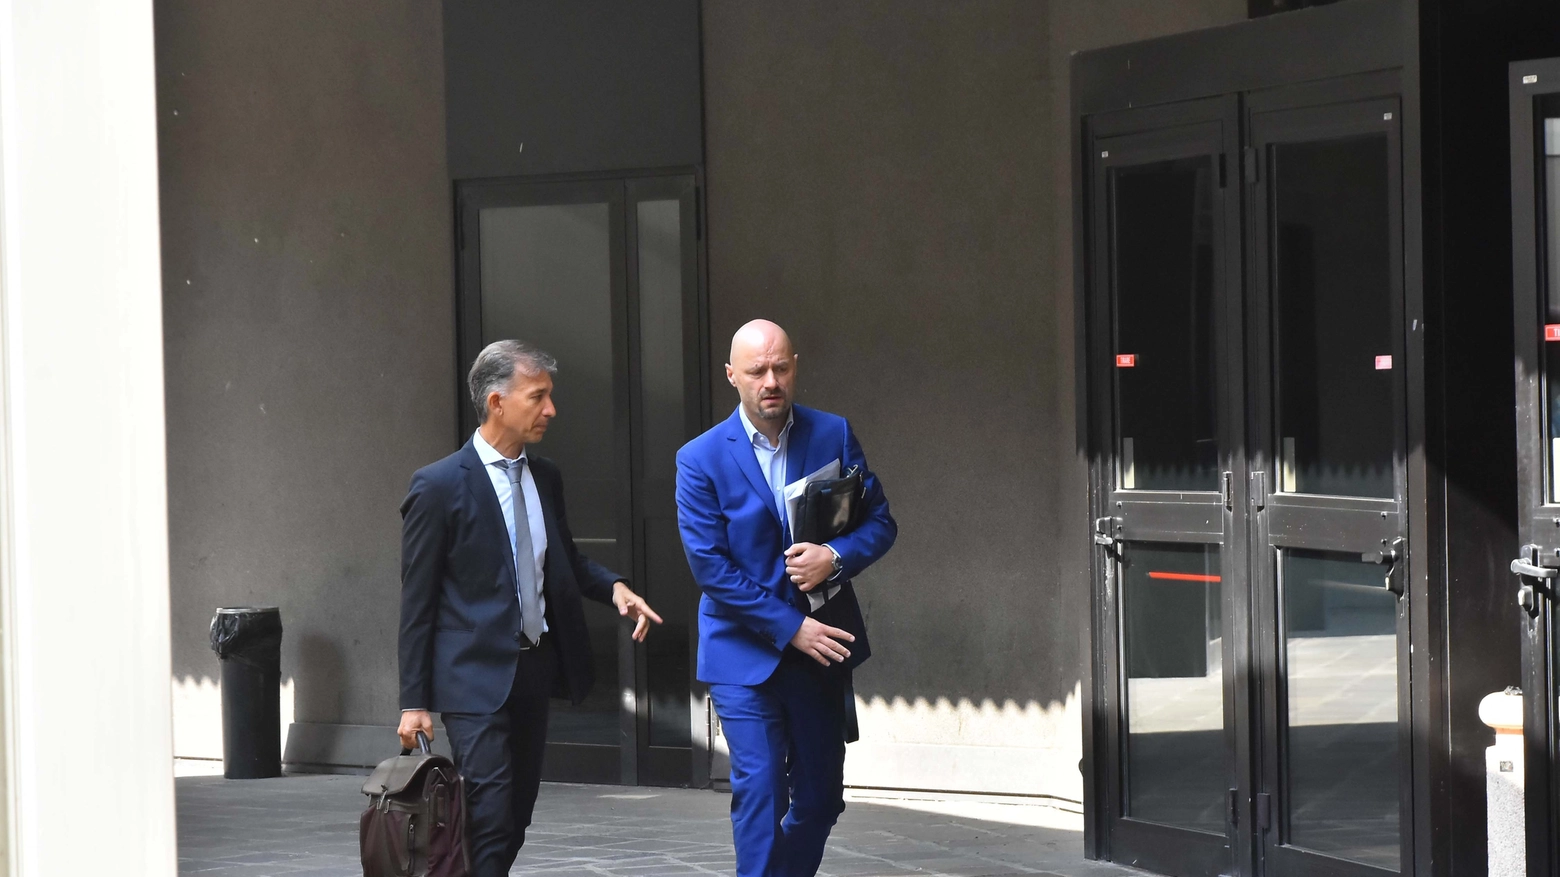 L'avvocato Tarquini e il sindaco Carletti (foto Artioli)